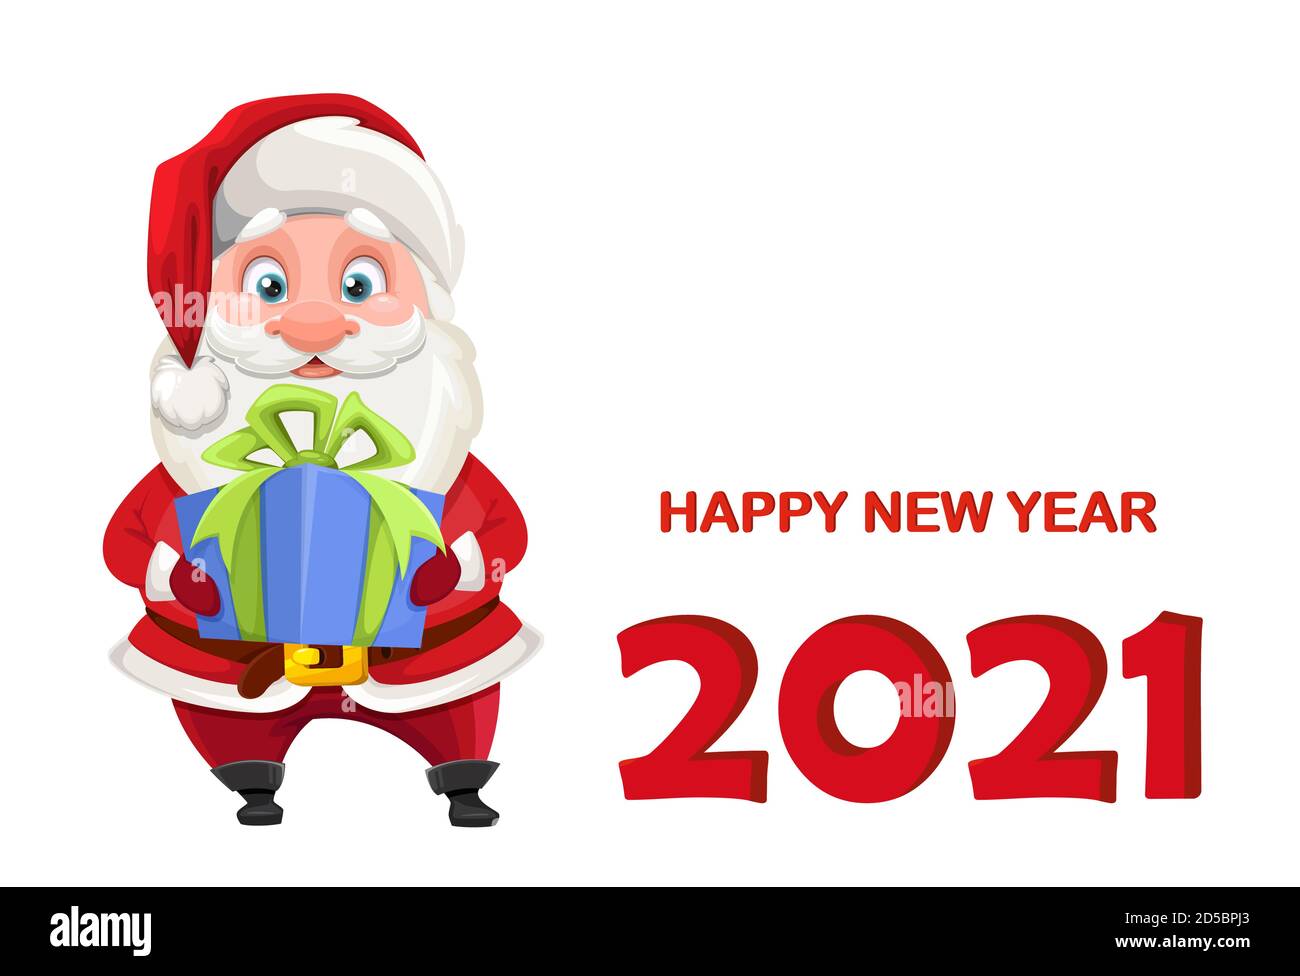 Weihnachtsmann hält Geschenkbox. Fröhliche Santa Cartoon-Figur. Glückwunschkarte für das neue Jahr. Vektorgrafik Stock Vektor